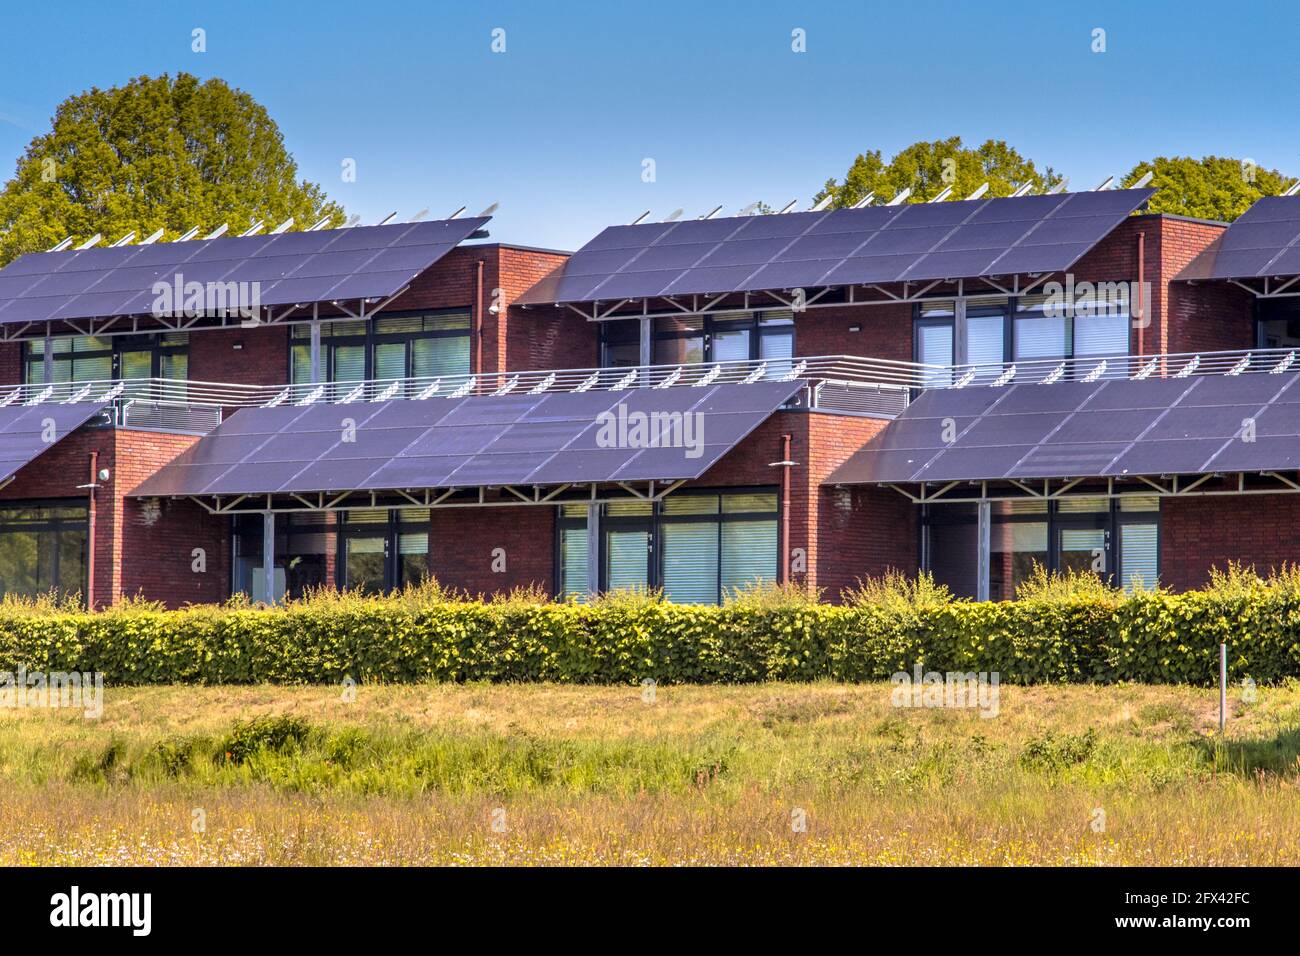 Bâtiment d'école publique avec panneaux solaires utilisés comme protection contre la lumière du soleil. Ombrer les salles de classe tout en générant de l'électricité. Une situation gagnant-gagnant. TH Banque D'Images